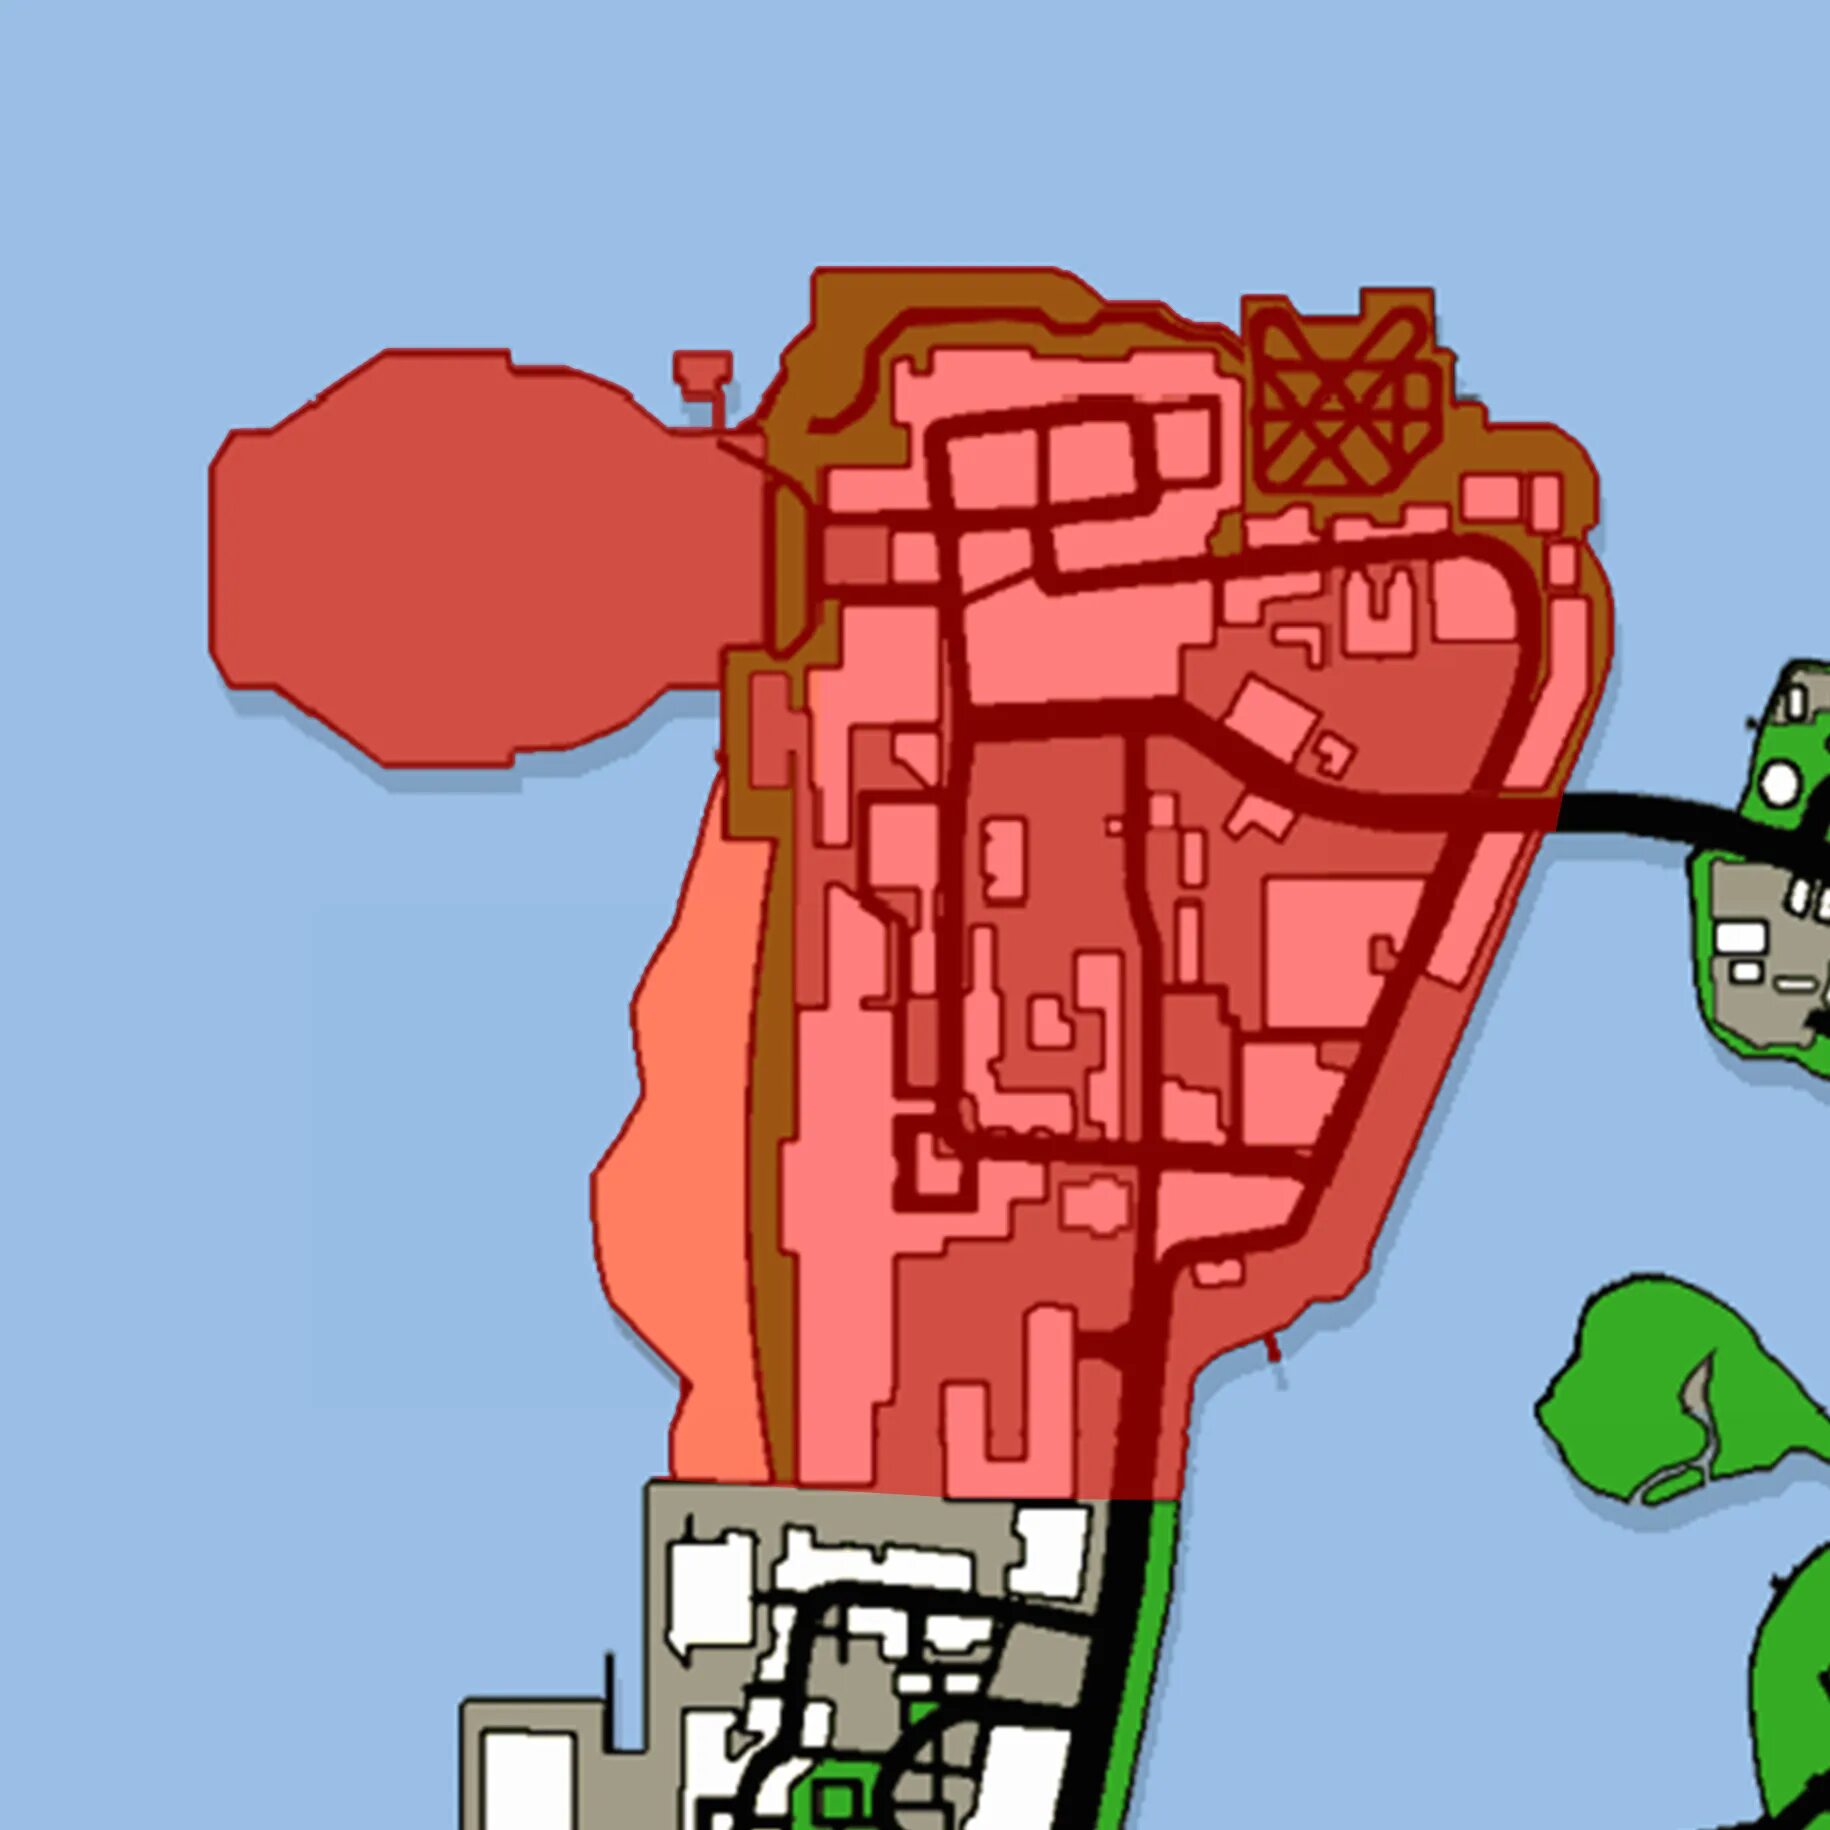 Недвижимость вайс сити. Downtown GTA VC. Vice City карта недвижимости. Деловой район Вайс Сити. Карта Вайс Сити с недвижимостью.